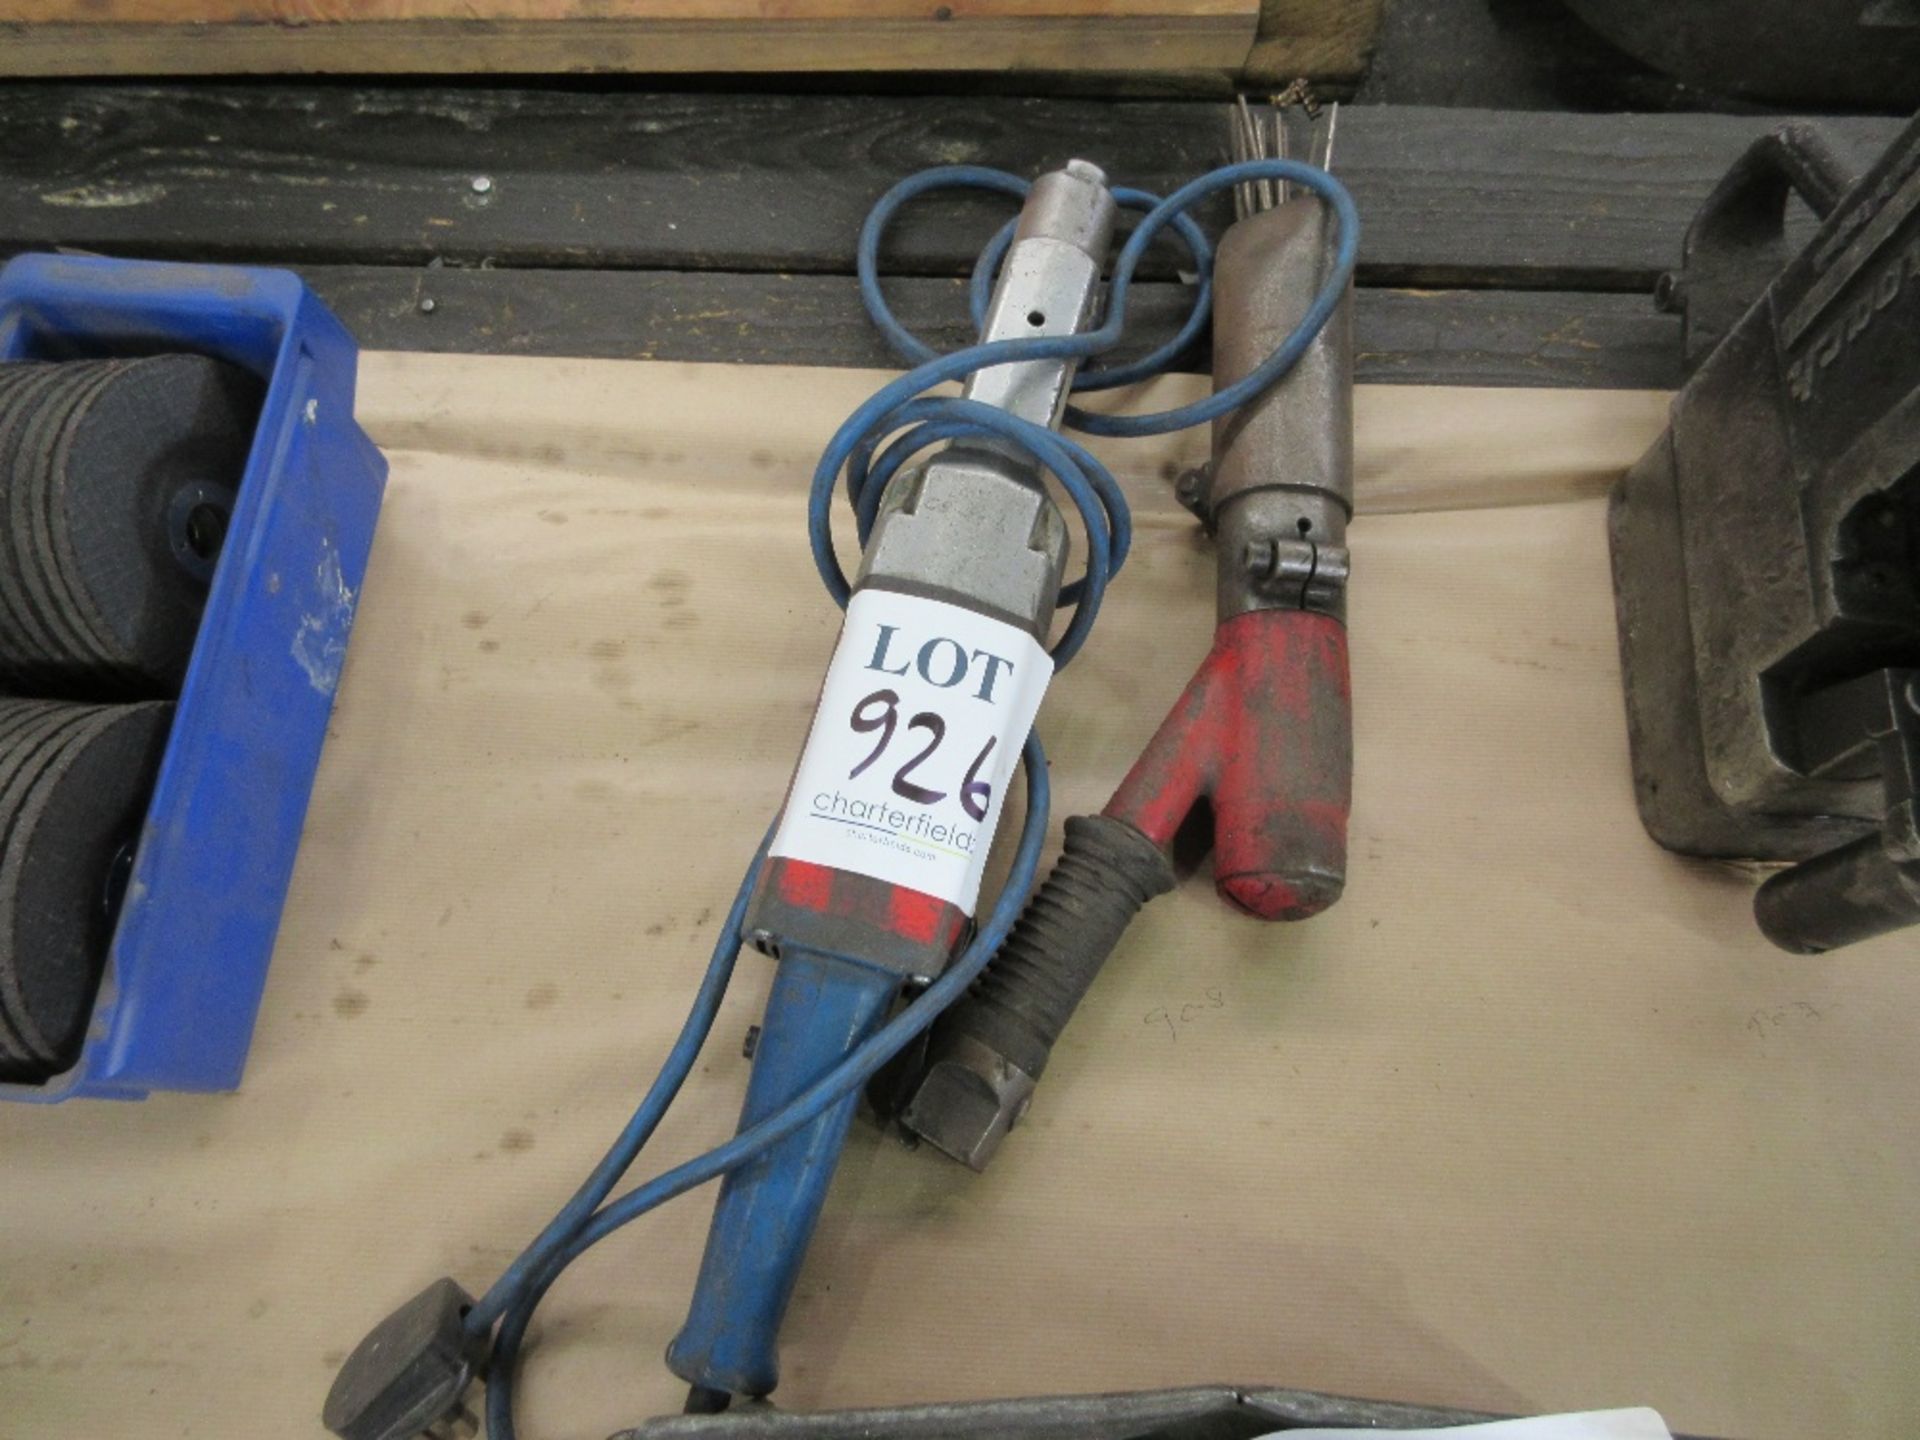 Descaler and 240v handheld rotary grinder